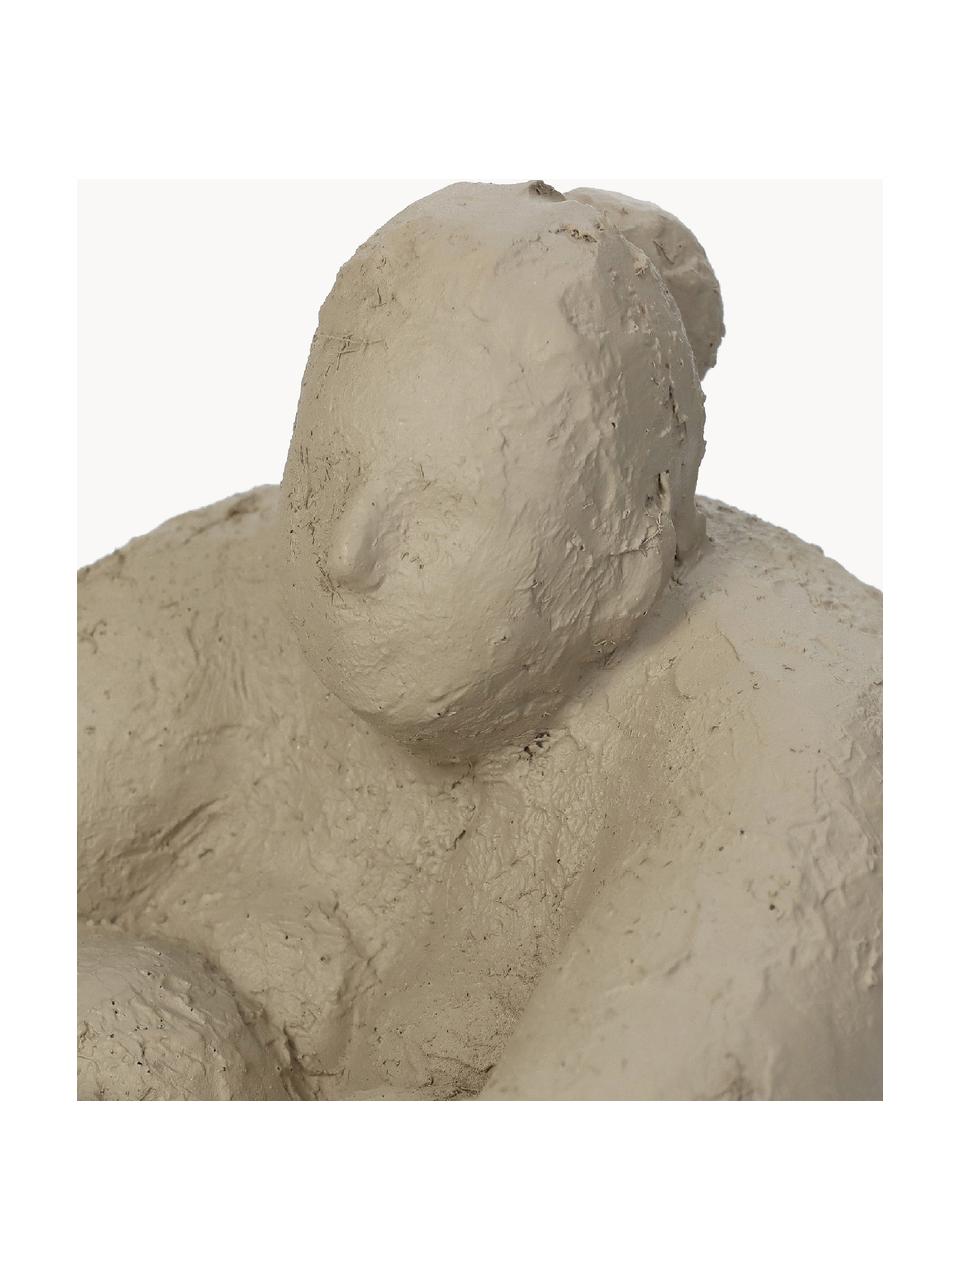 Figura decorativa Big Woman, Plástico, Beige claro, Ø 15 x Al 17 cm